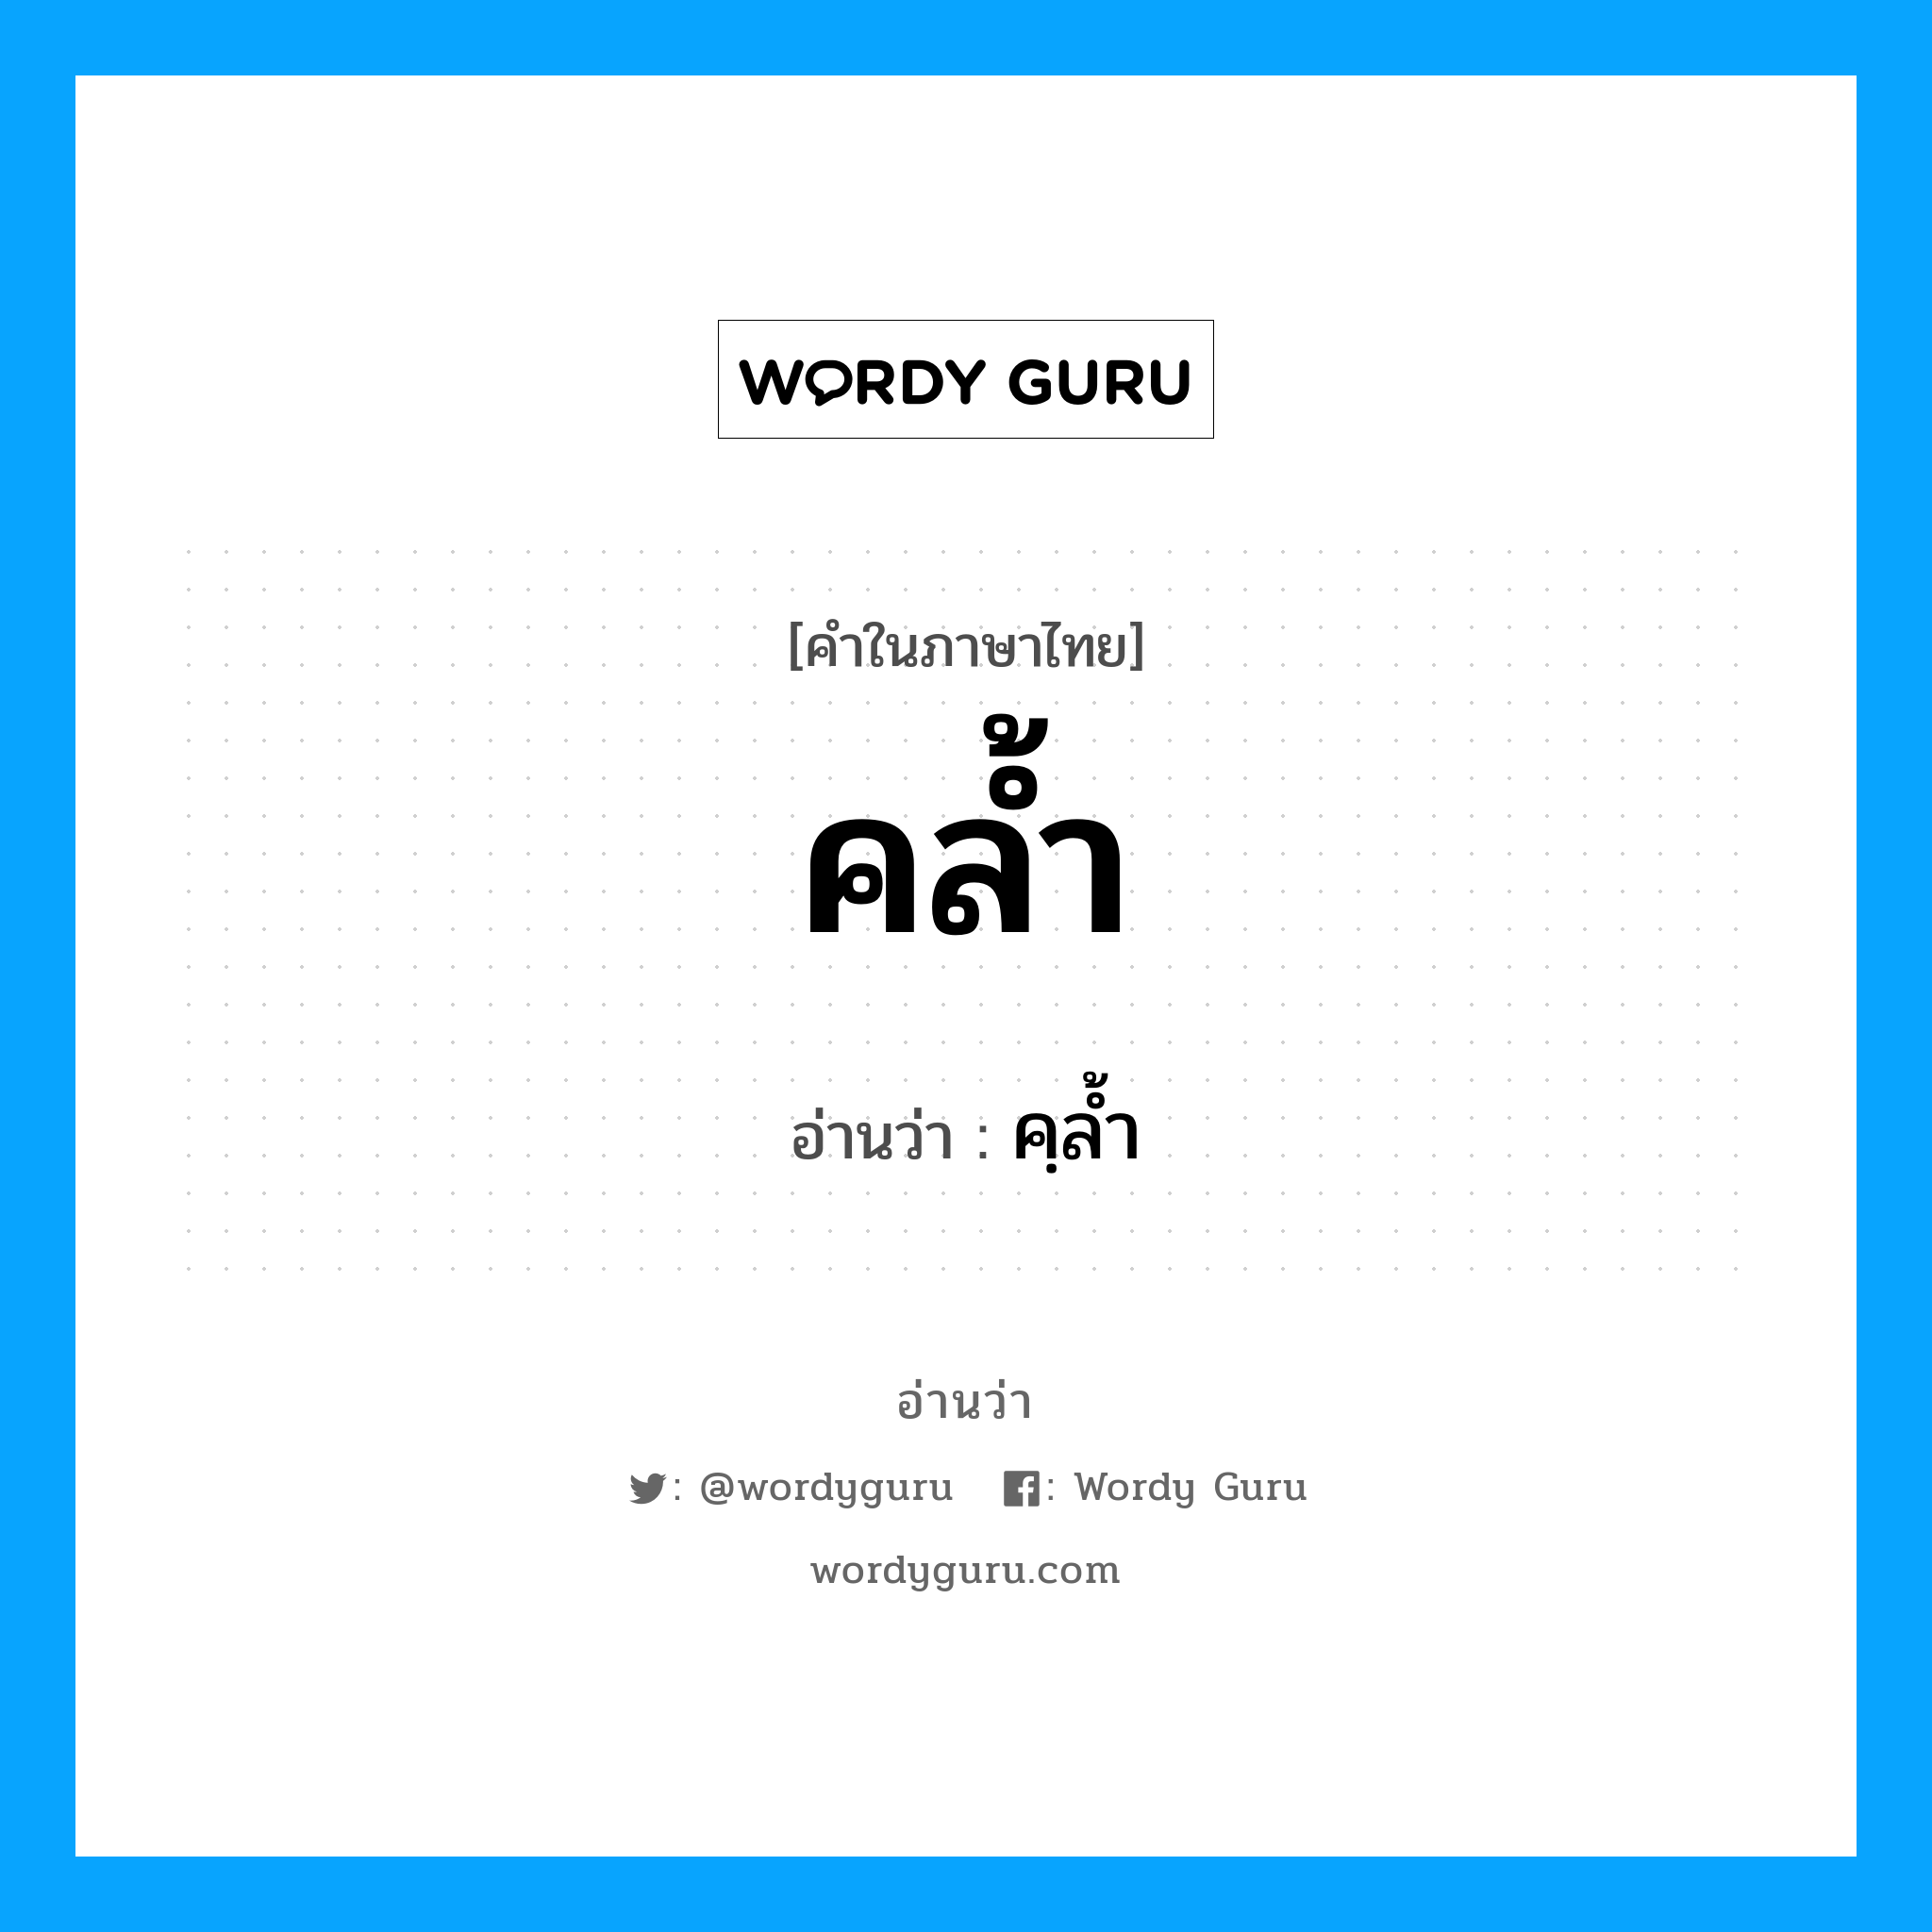 คฺลํ้า เป็นคำอ่านของคำไหน?, คำในภาษาไทย คฺลํ้า อ่านว่า คล้ำ